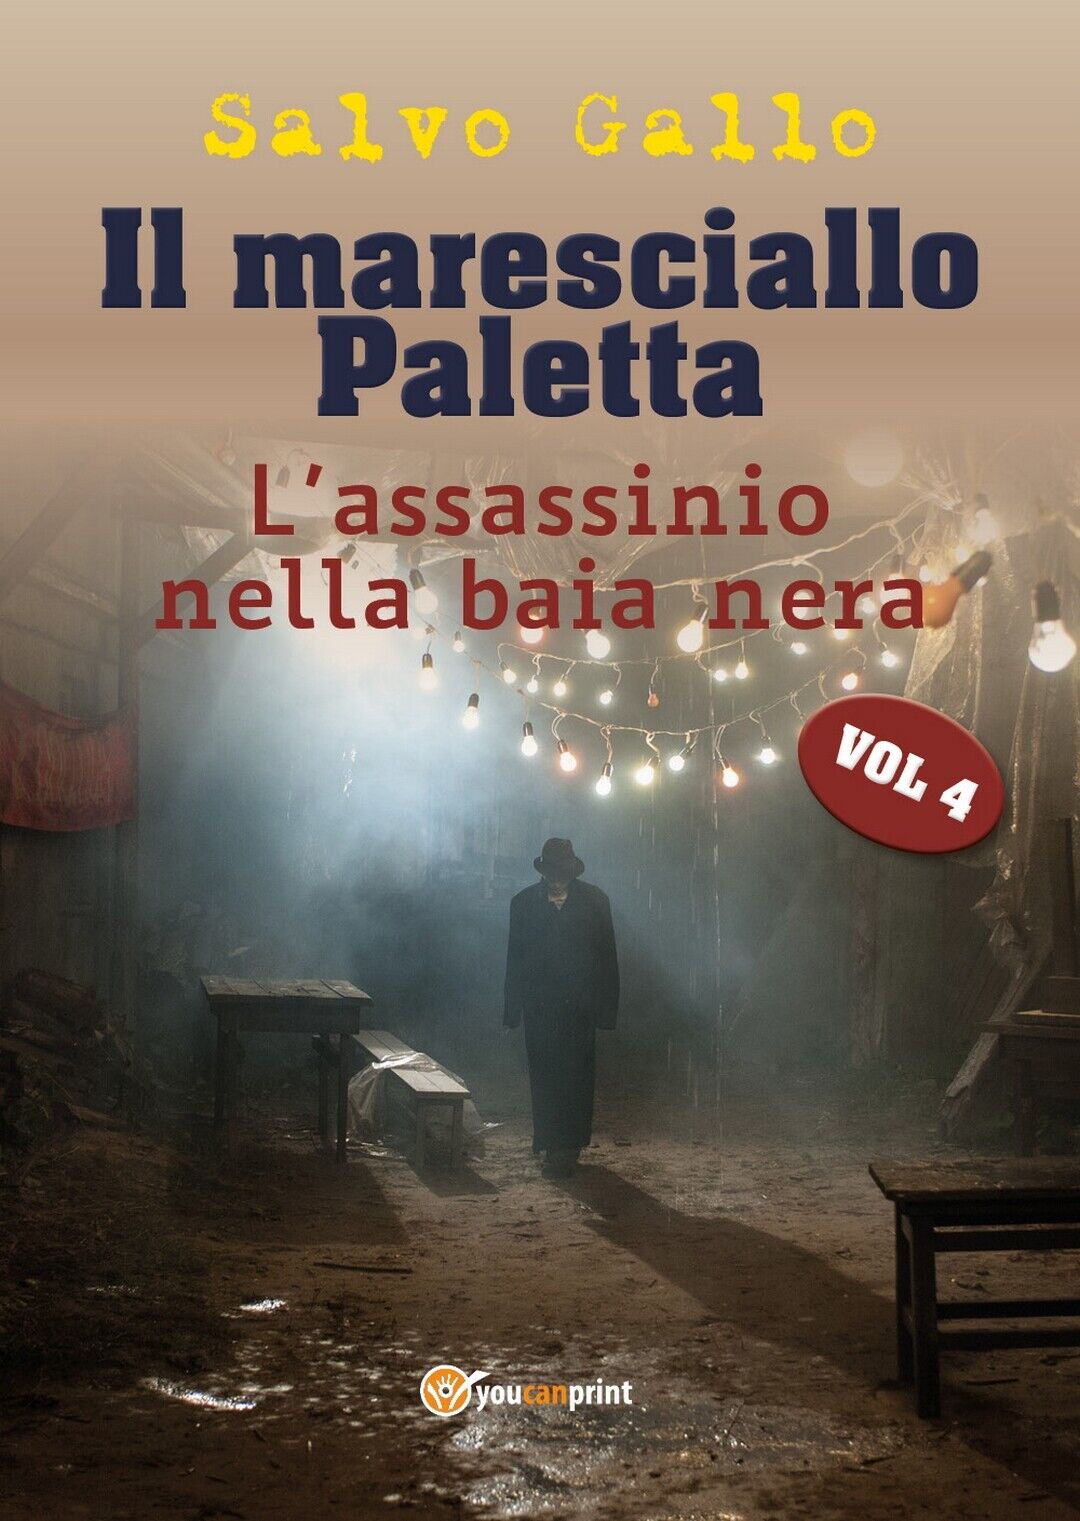 Il maresciallo Paletta Vol 4 - L'assassinio della baia nera  di Salvo Gallo libro usato